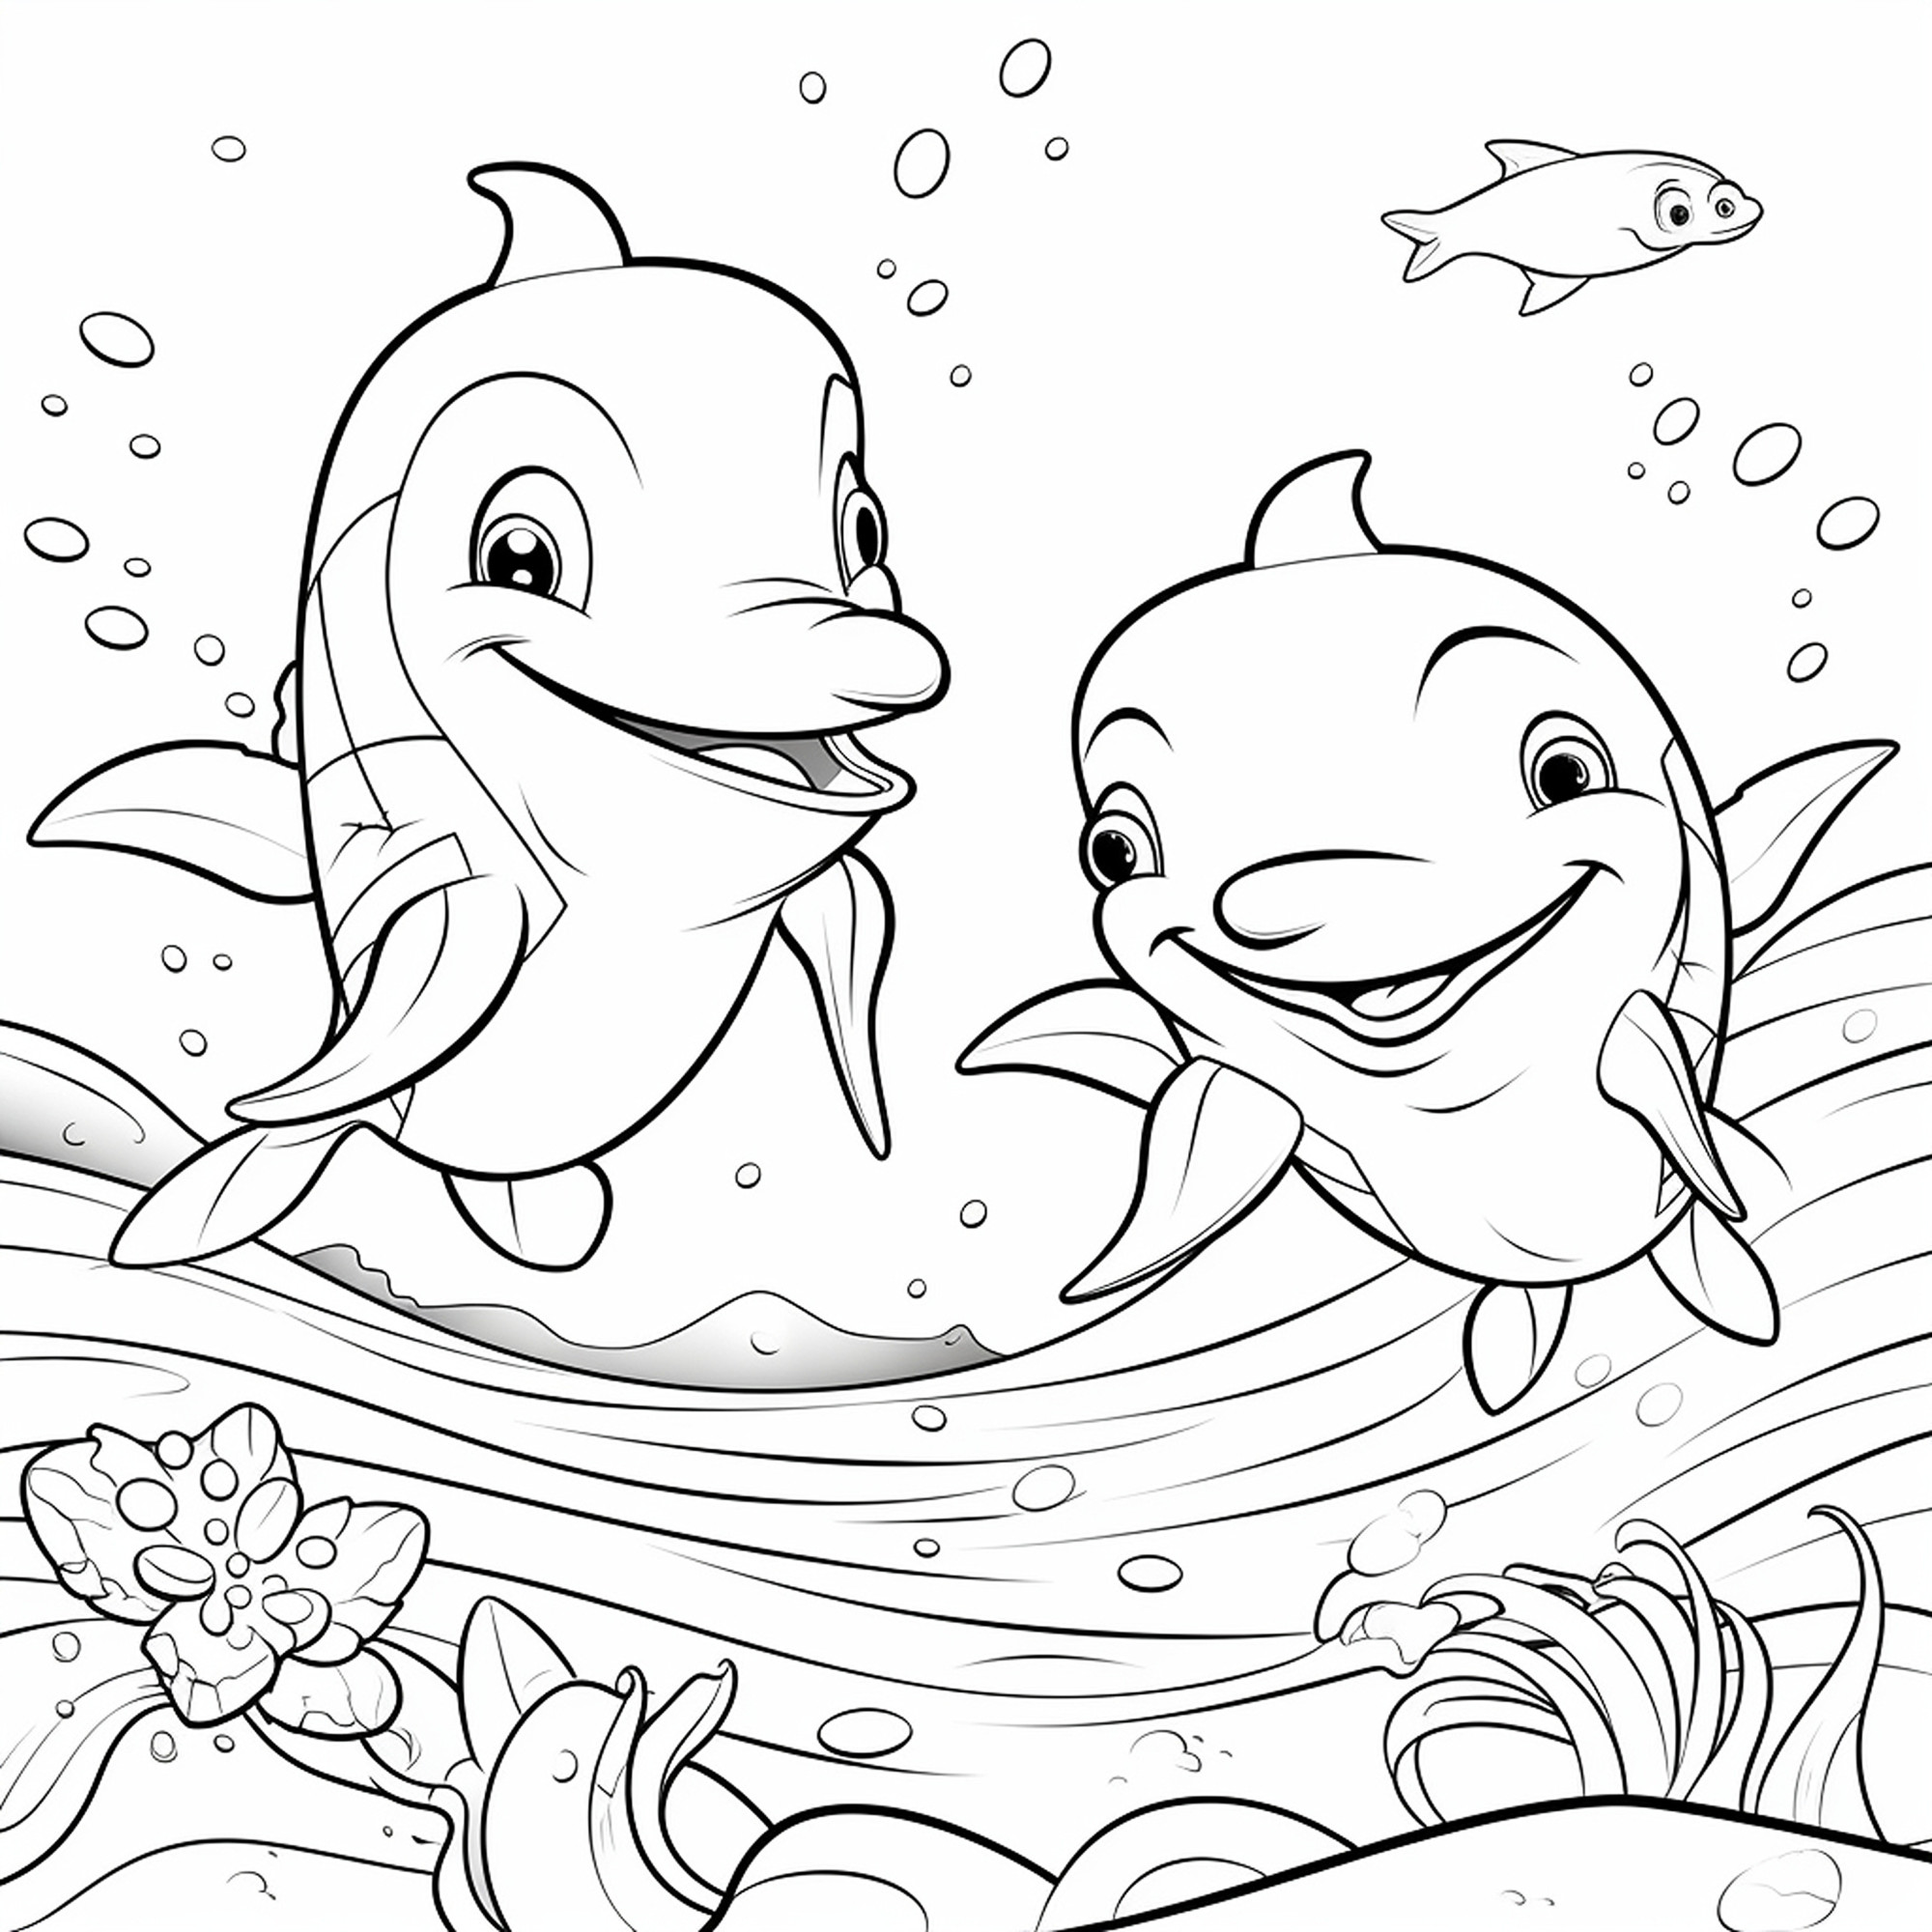 Раскраска для детей: два веселых дельфина с маленькой рыбкой